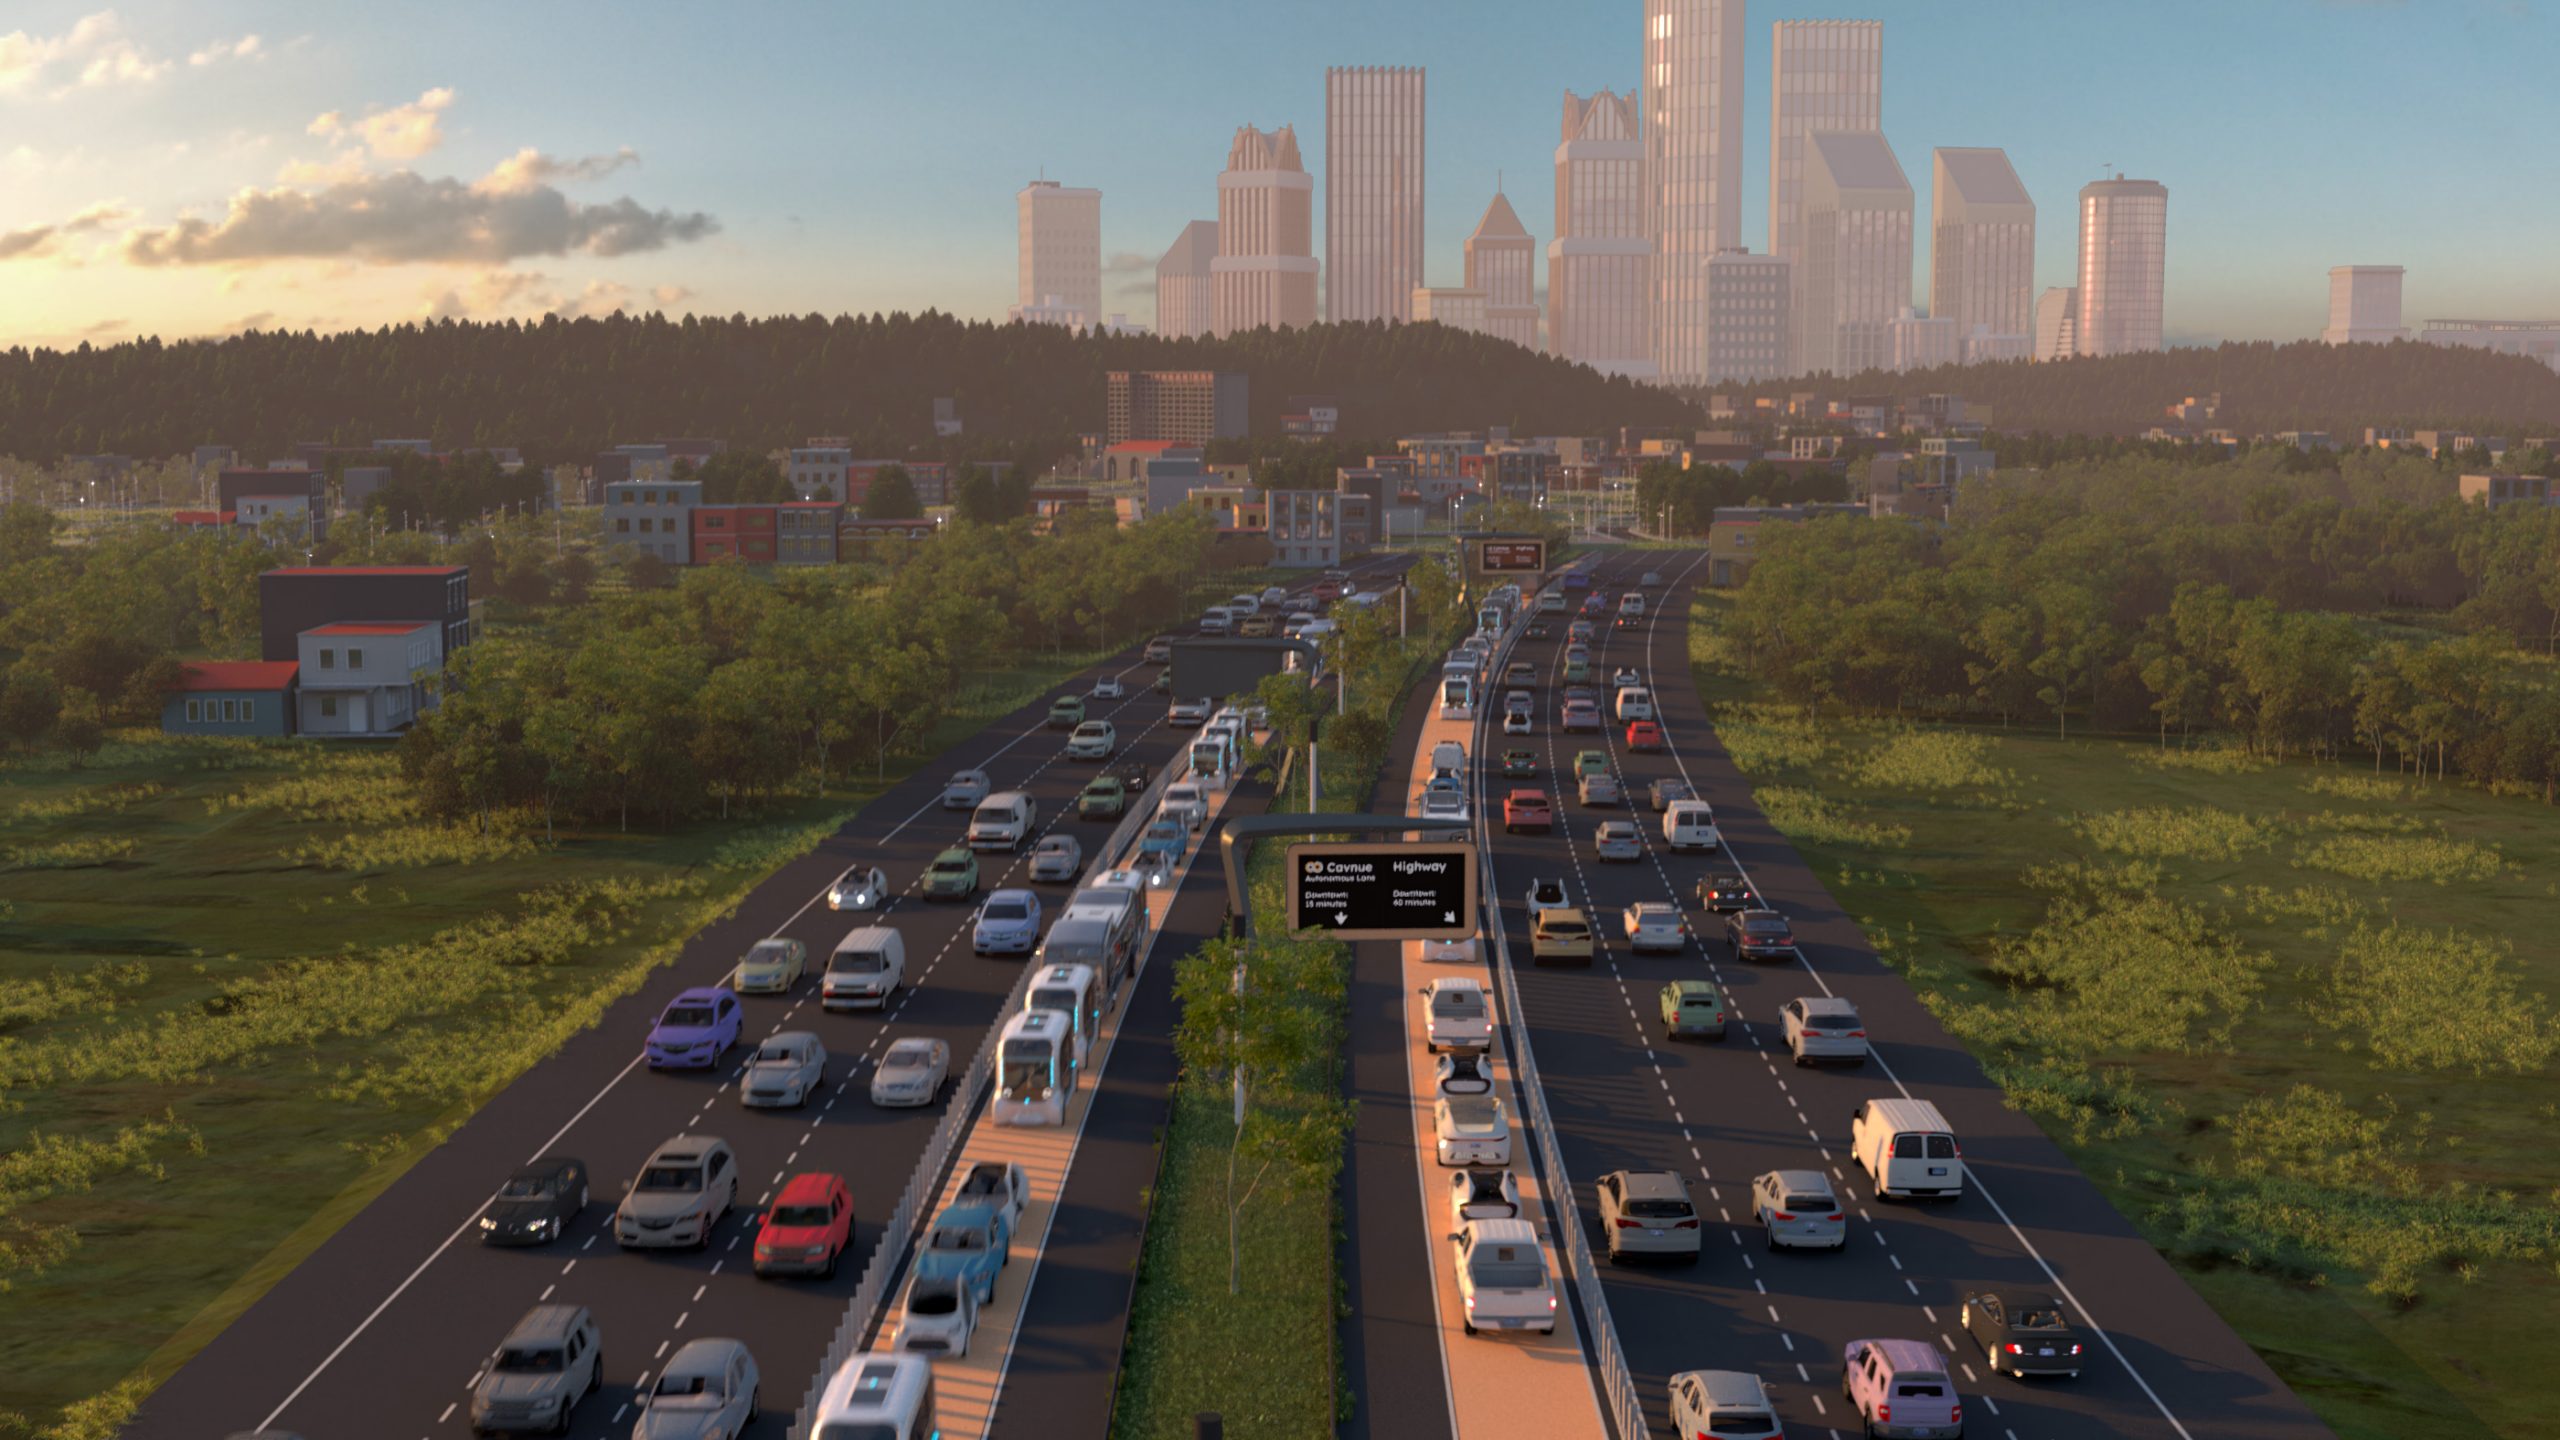 Rendering of a corridor between highways with autonomous vehicles